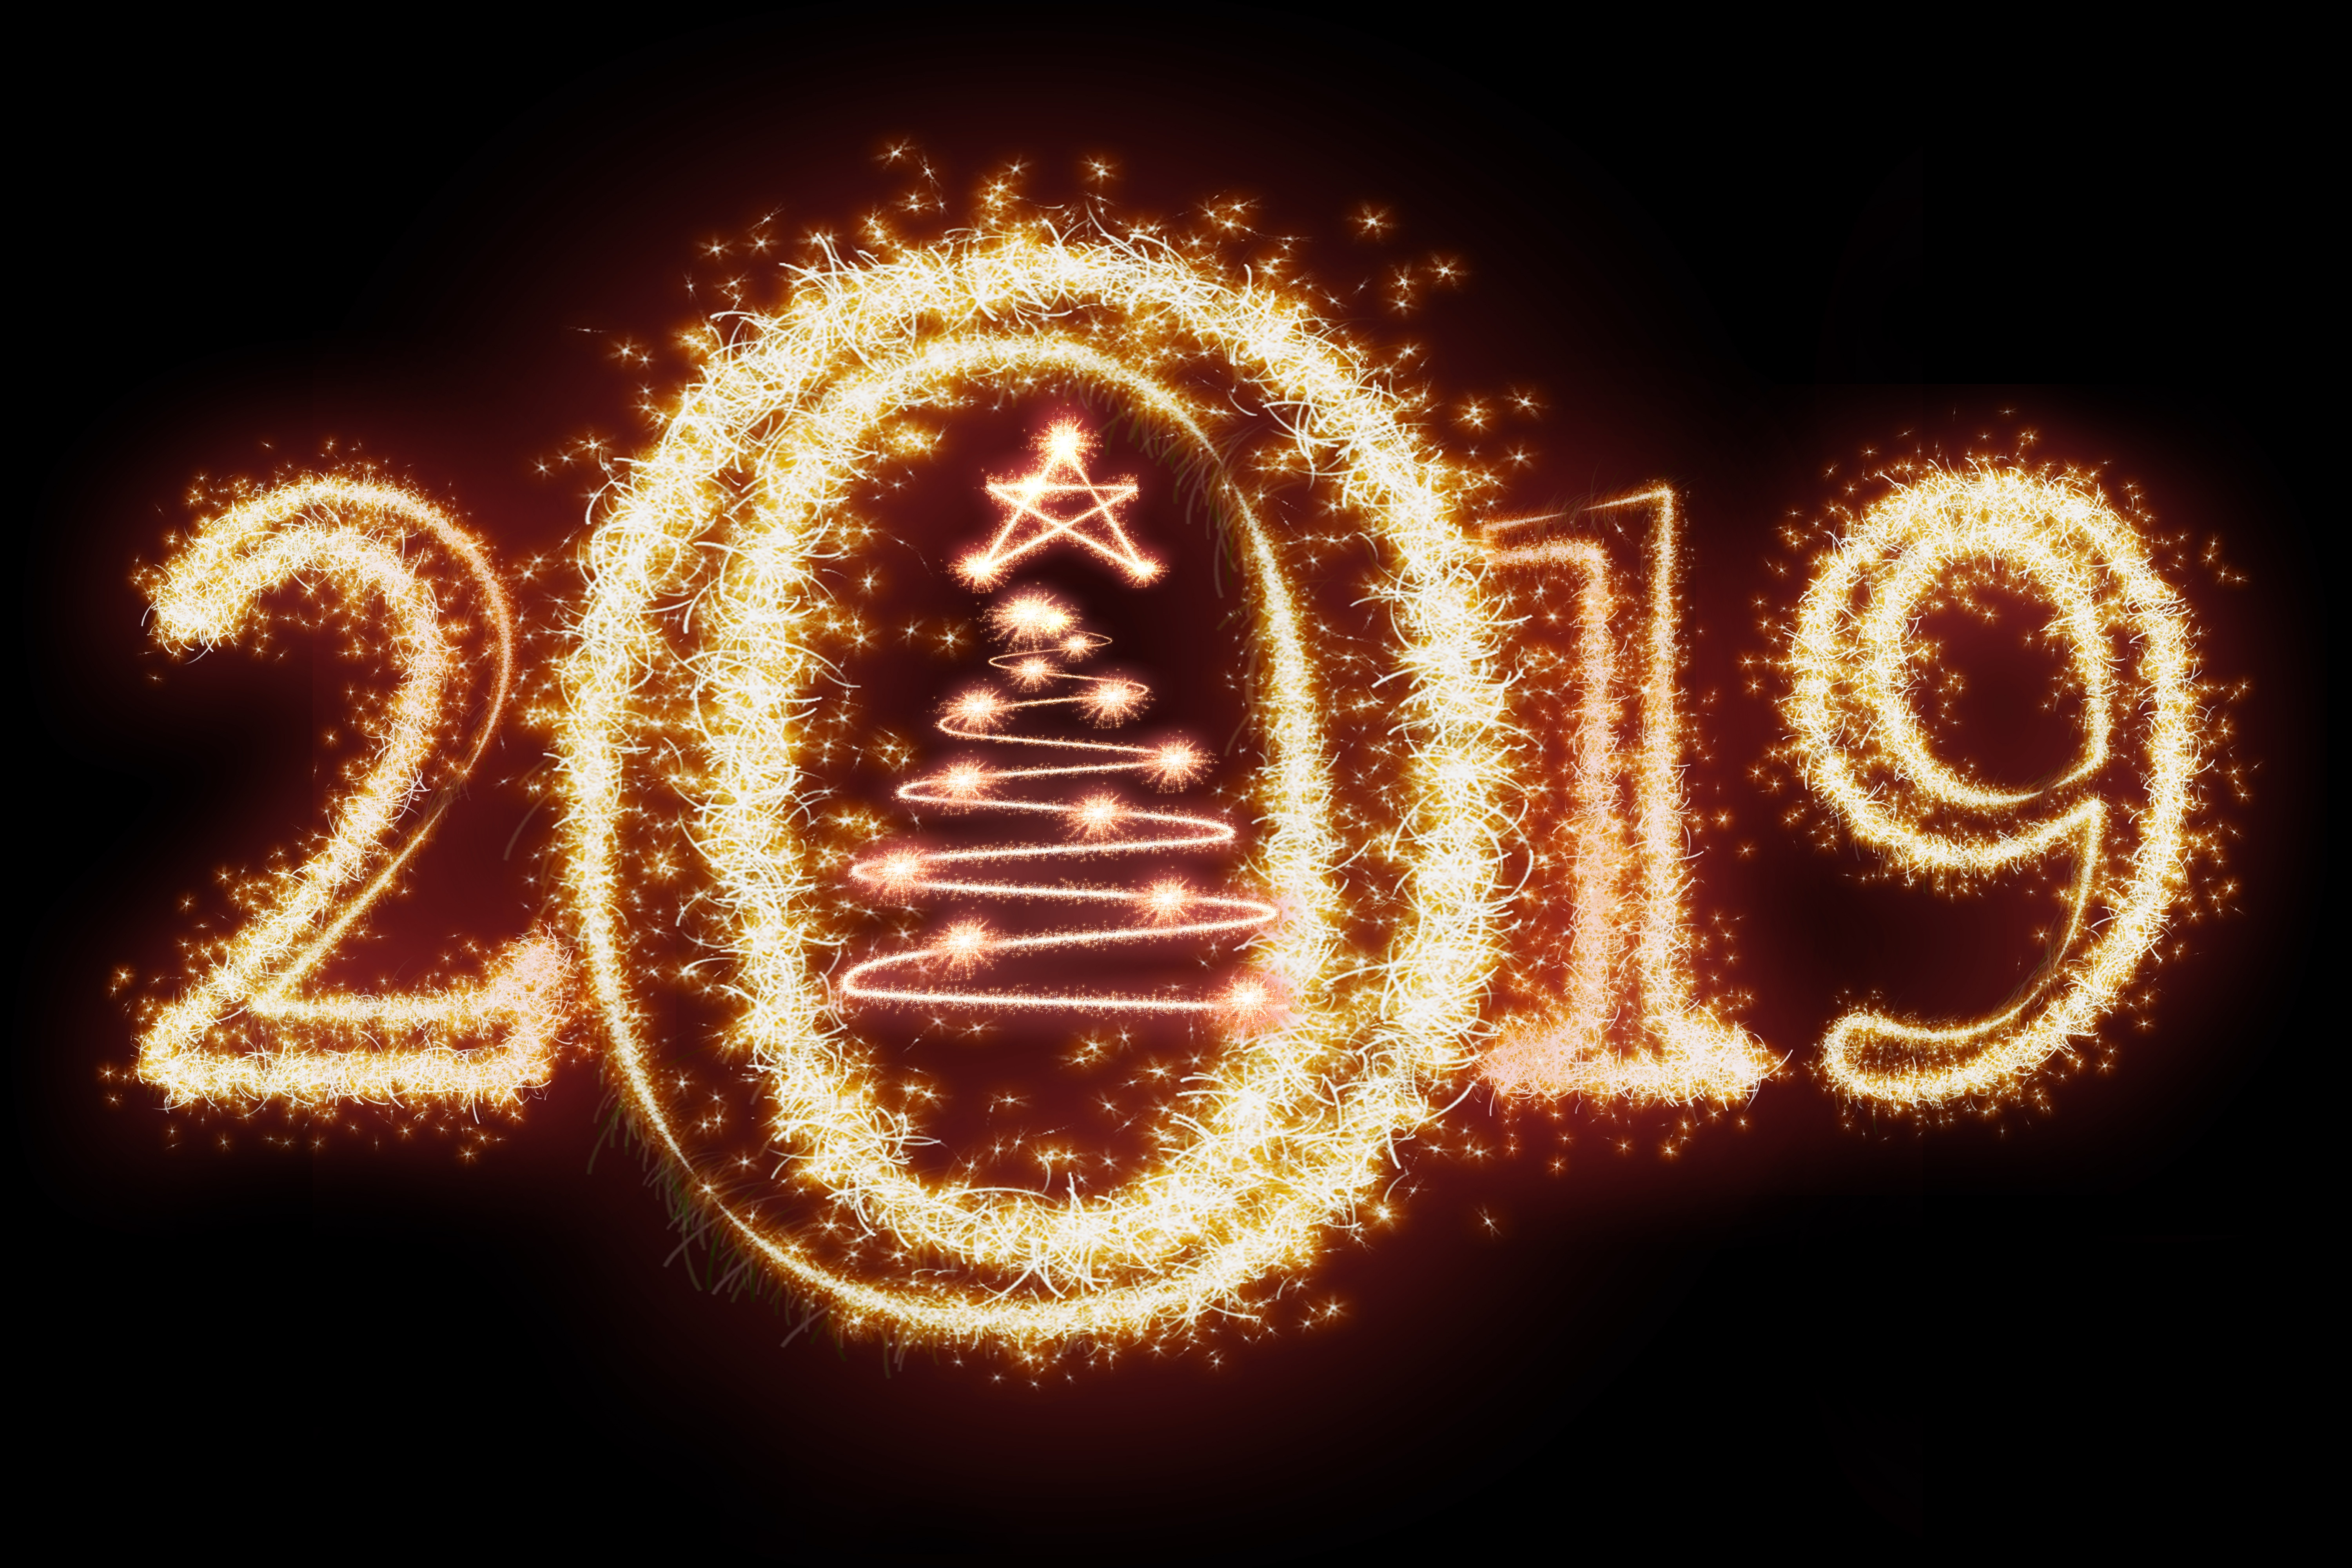 Скачать обои бесплатно Праздничные, Фейверки, С Новым Годом, Новый Год 2019 картинка на рабочий стол ПК